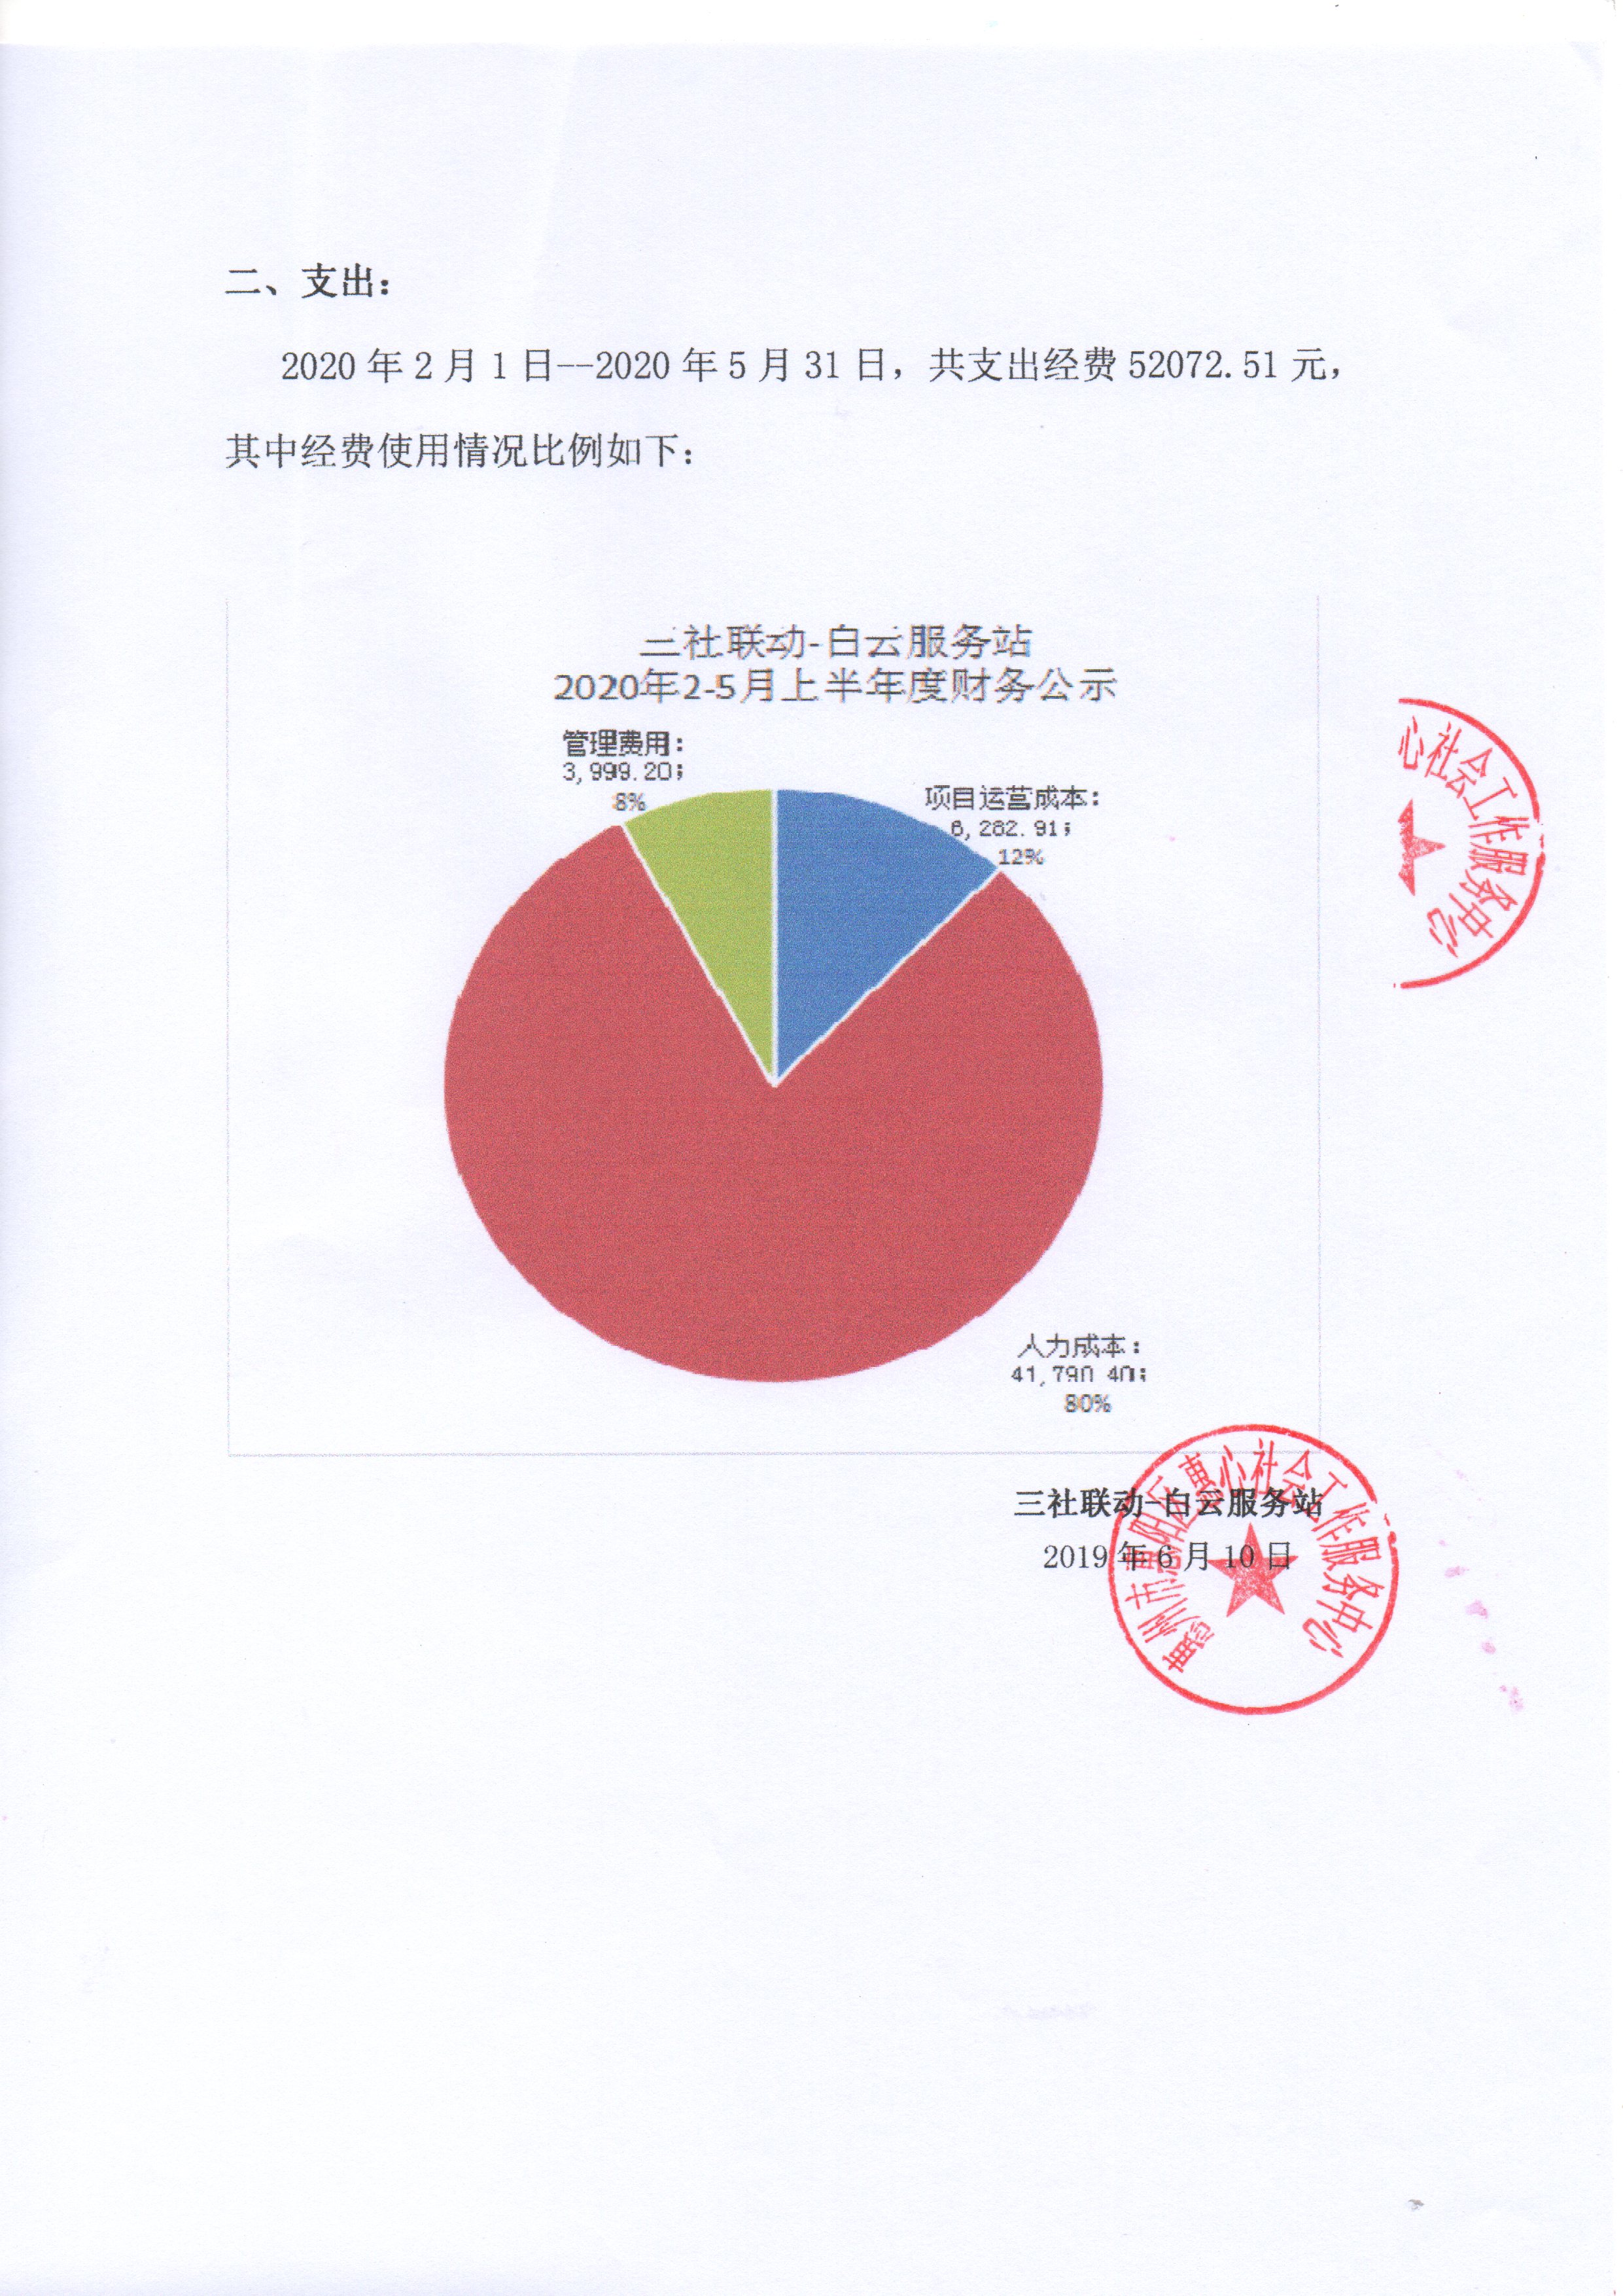 三社联动-白云服务站20年上半年财务公示